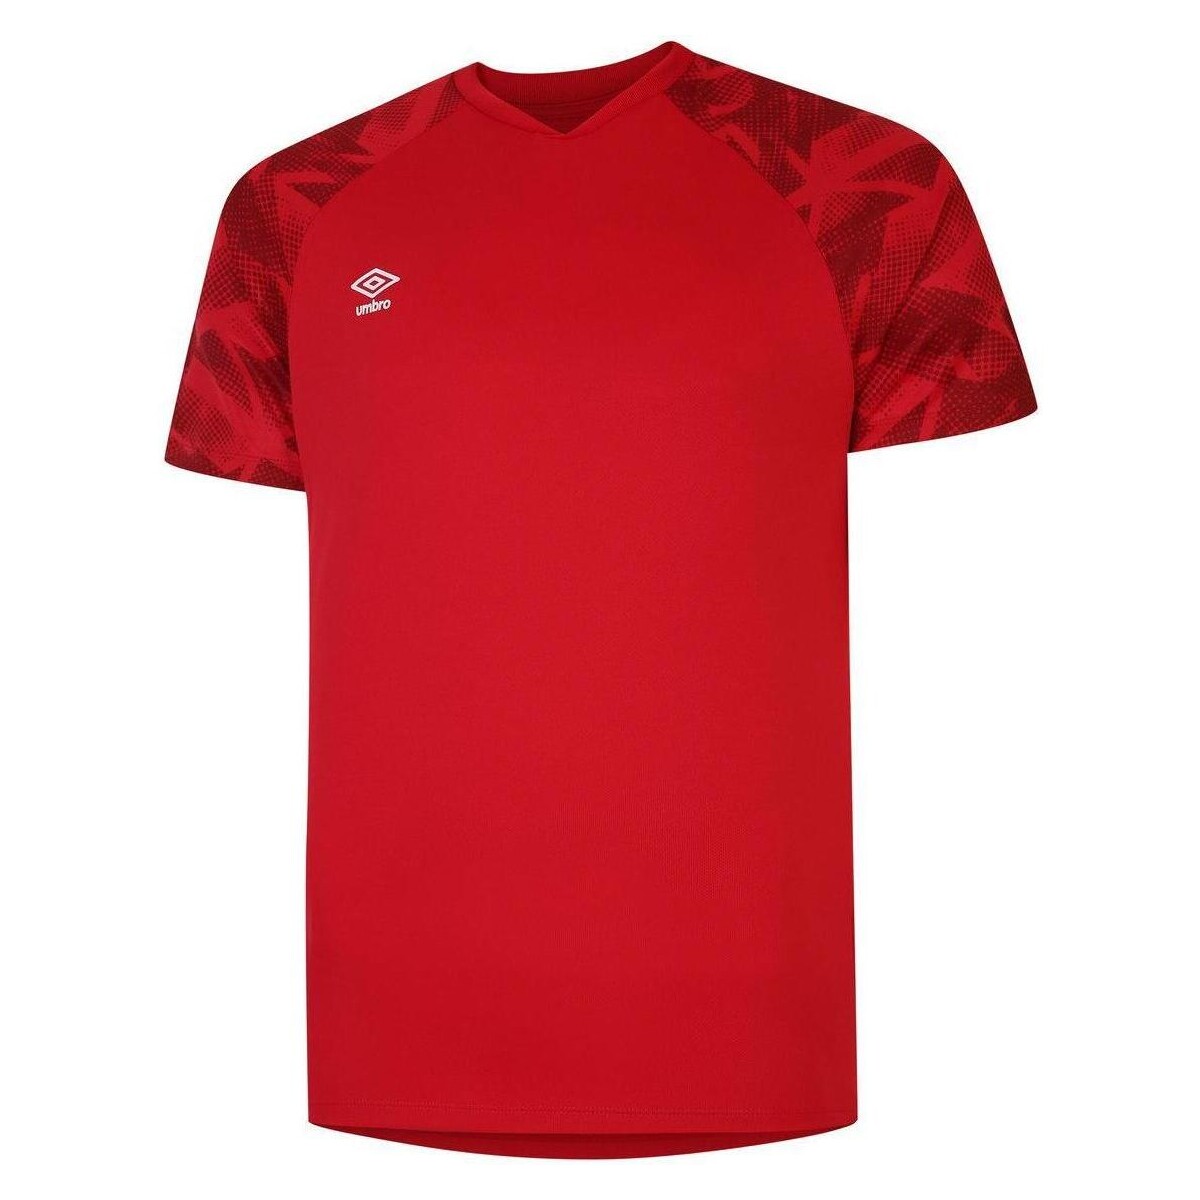 Vêtements Enfant T-shirts manches courtes Umbro UO1899 Rouge